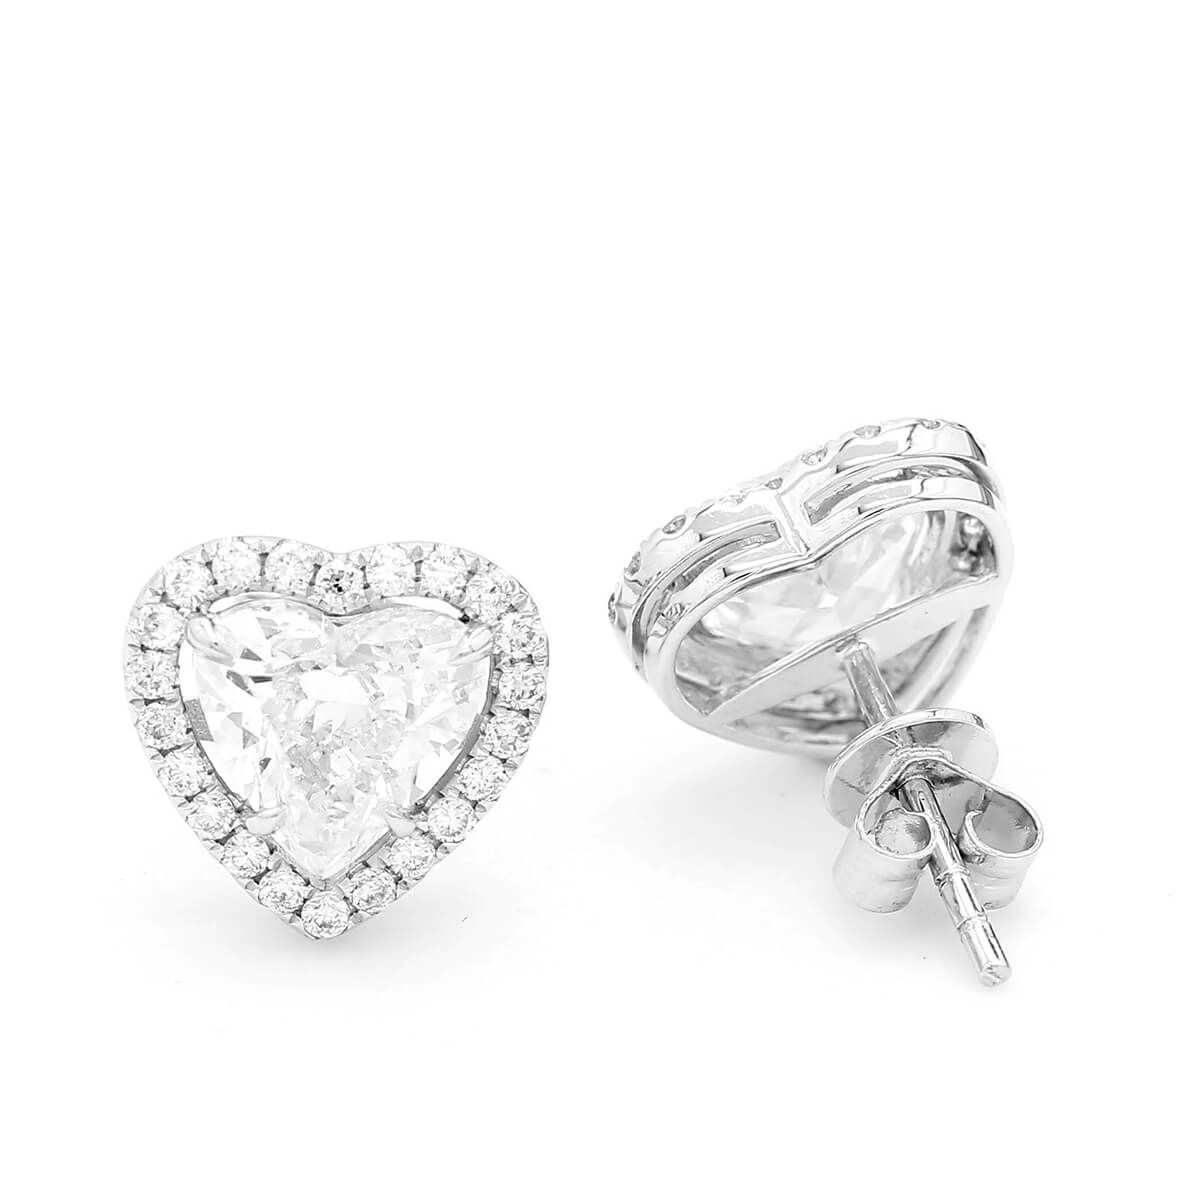  White Diamond Earrings, 2.40 Ct. (2.71 Ct. TW), Heart shape, GIA Certified, JCEW05424175